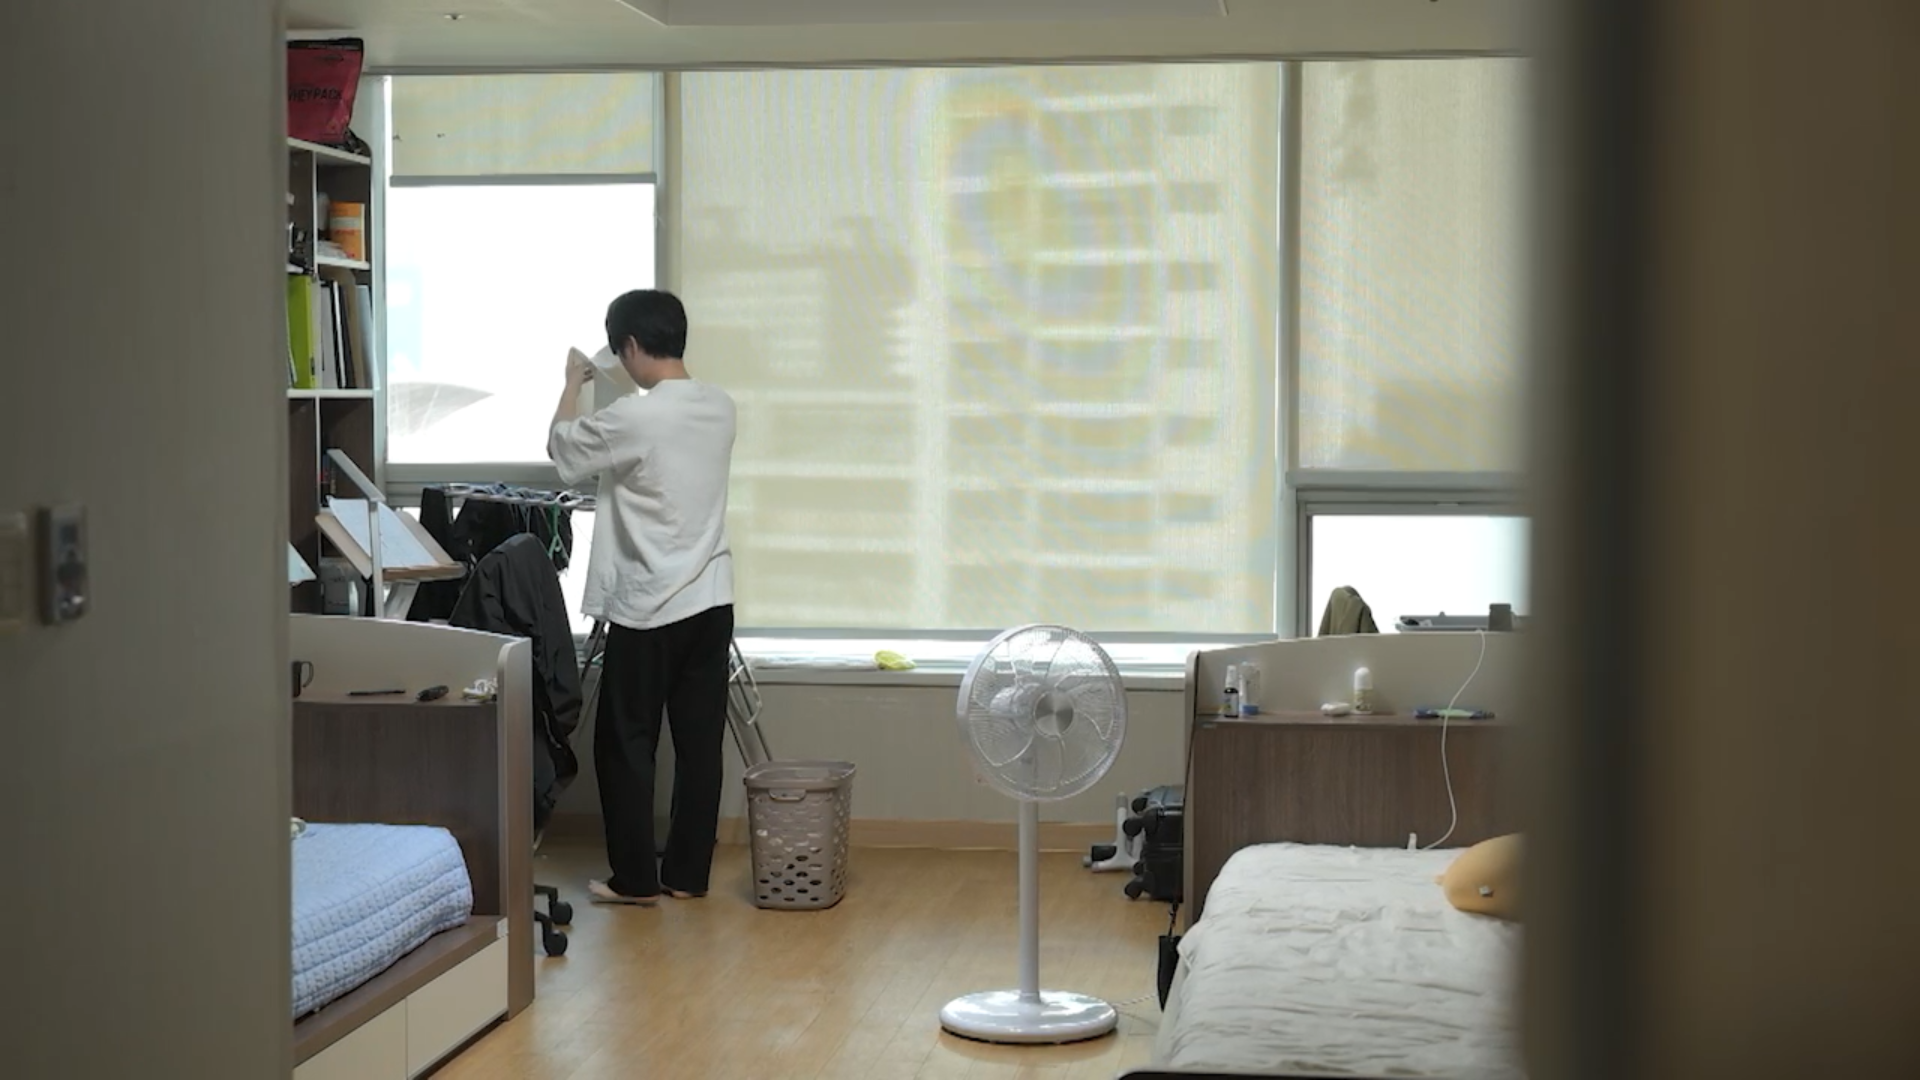 대학 졸업을 앞둔 26살 오종민 씨가 서울에서 살고 있는 기숙사.